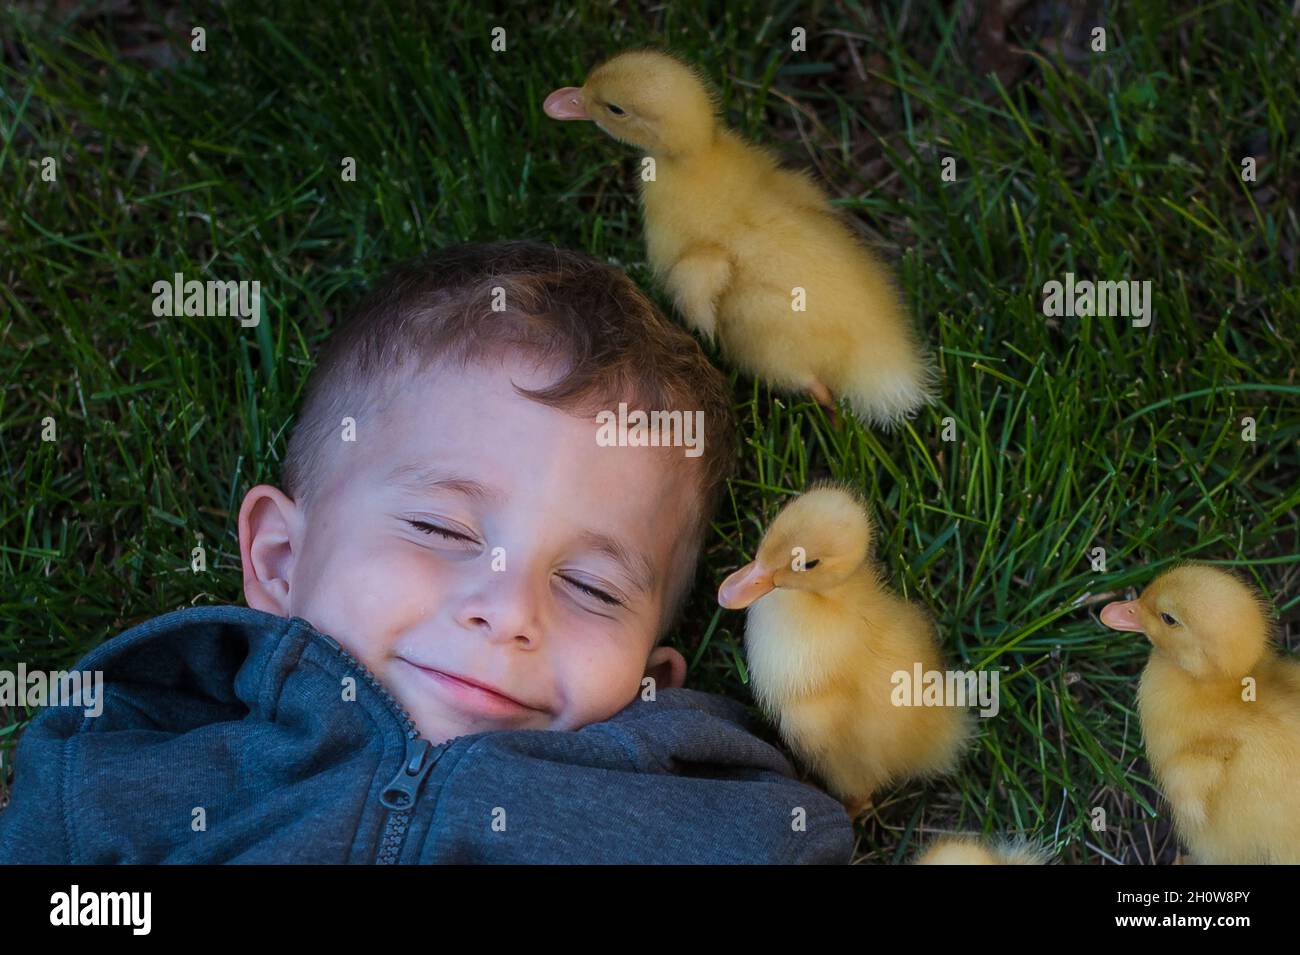 Kleiner Junge lachend, während kleine Enten um ihn herumlaufen Stockfoto